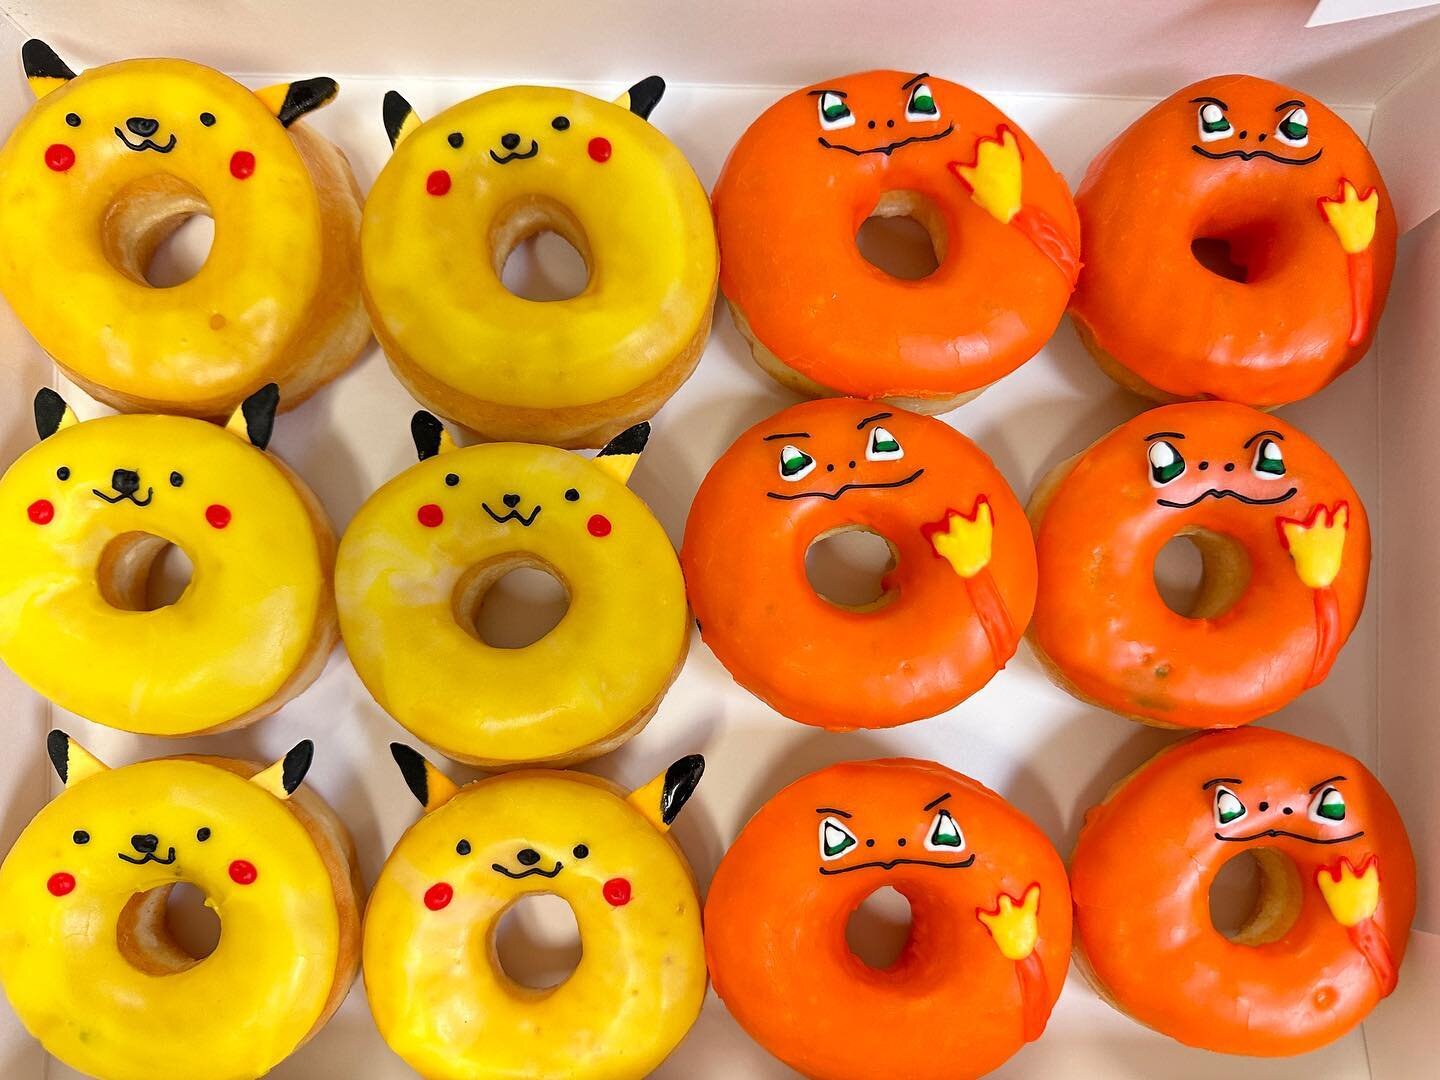 master donuts photos